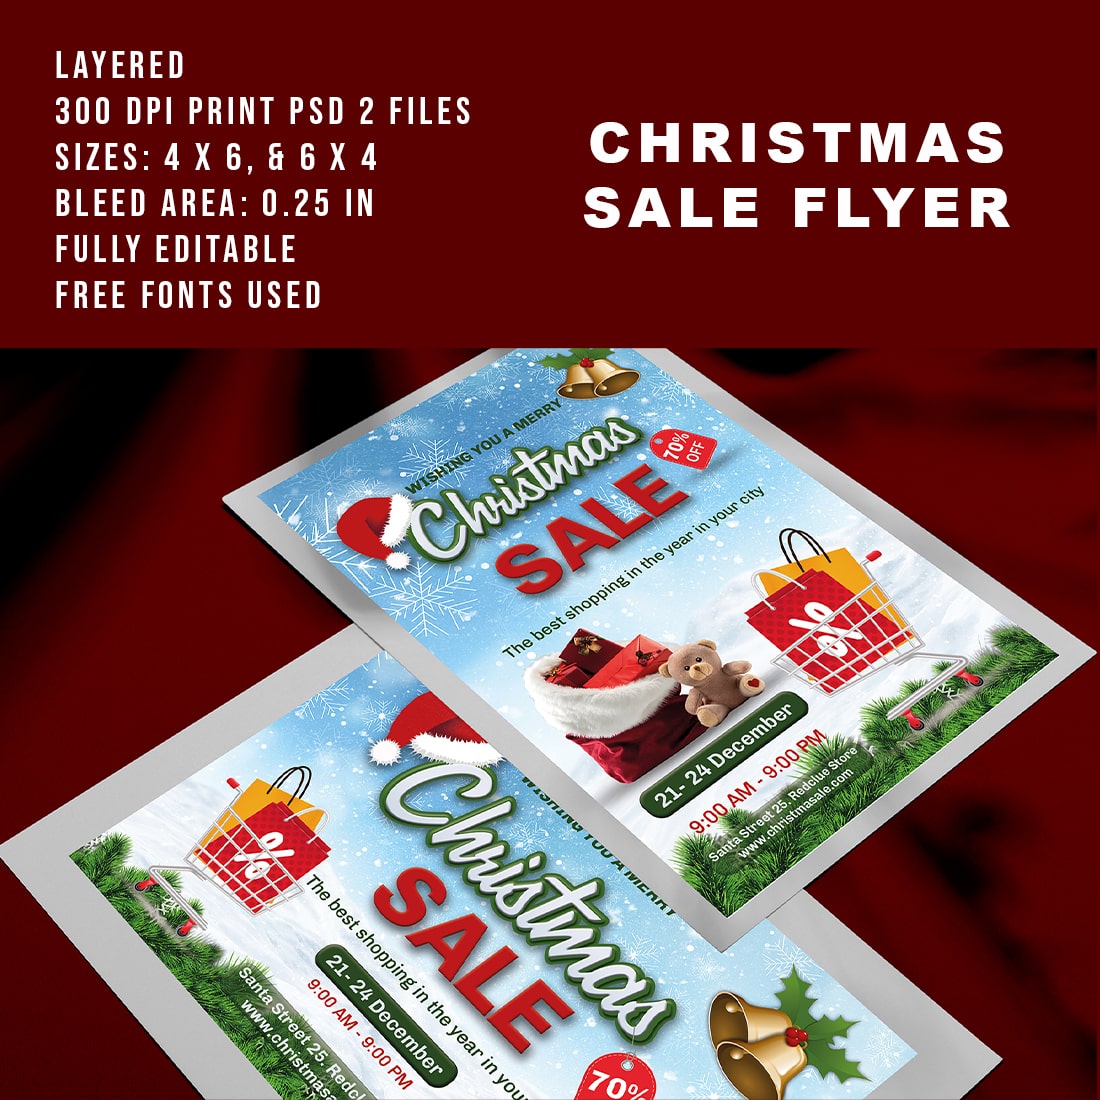 Printable Christmas Sale Flyer - main image preview.